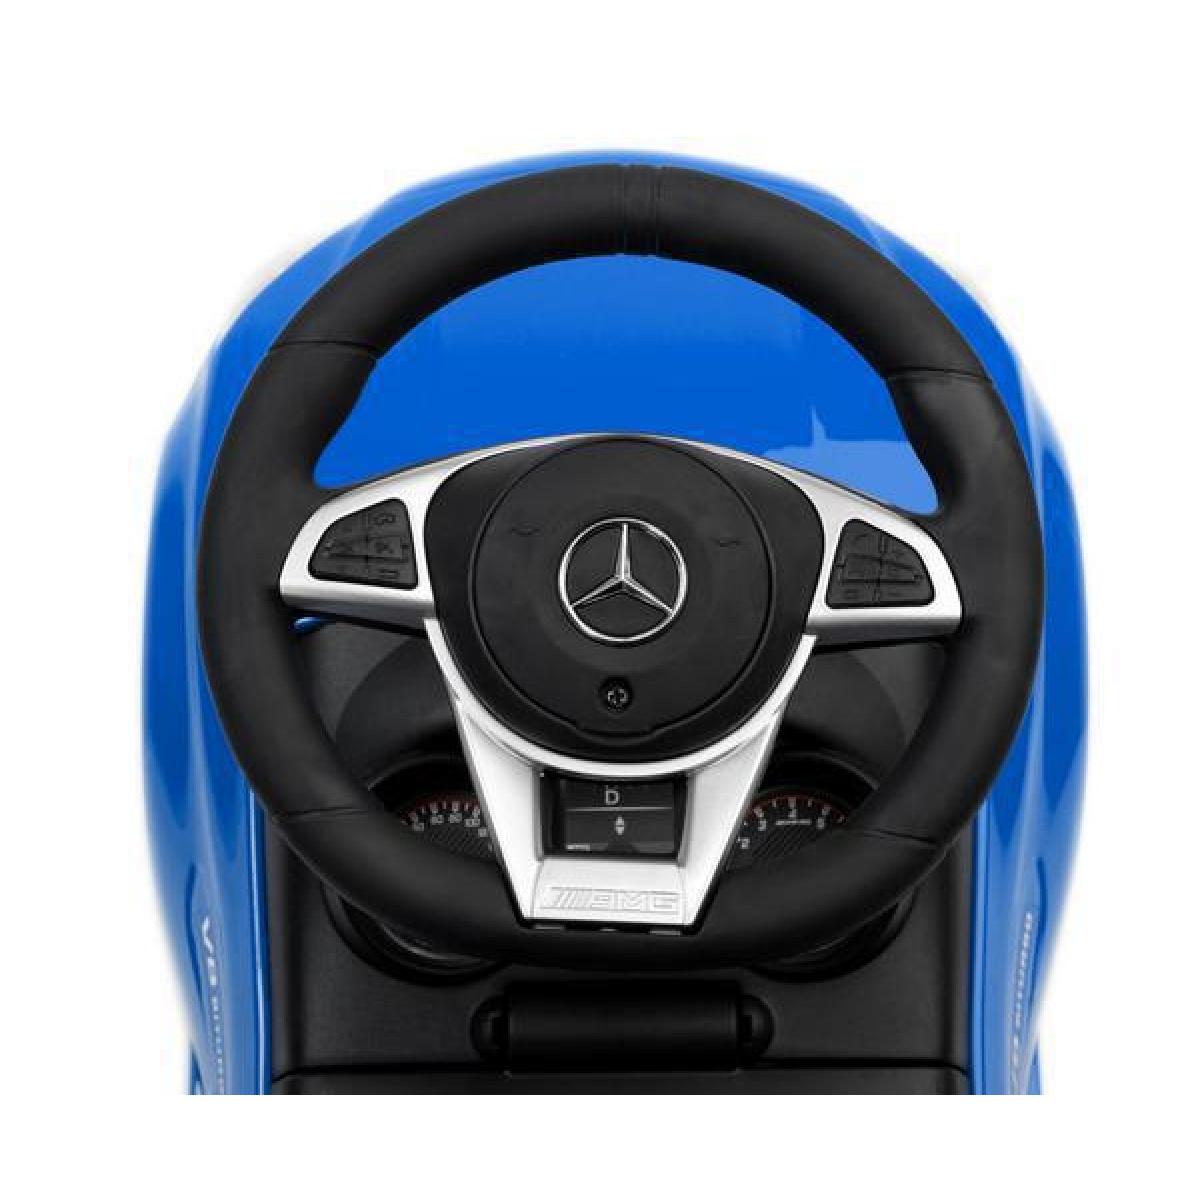 Παιδικό Αμαξάκι - Περπατούρα Ride on Car Mercedes-Benz C63 AMG Licenced Product Toyz By Caretero Μπλε